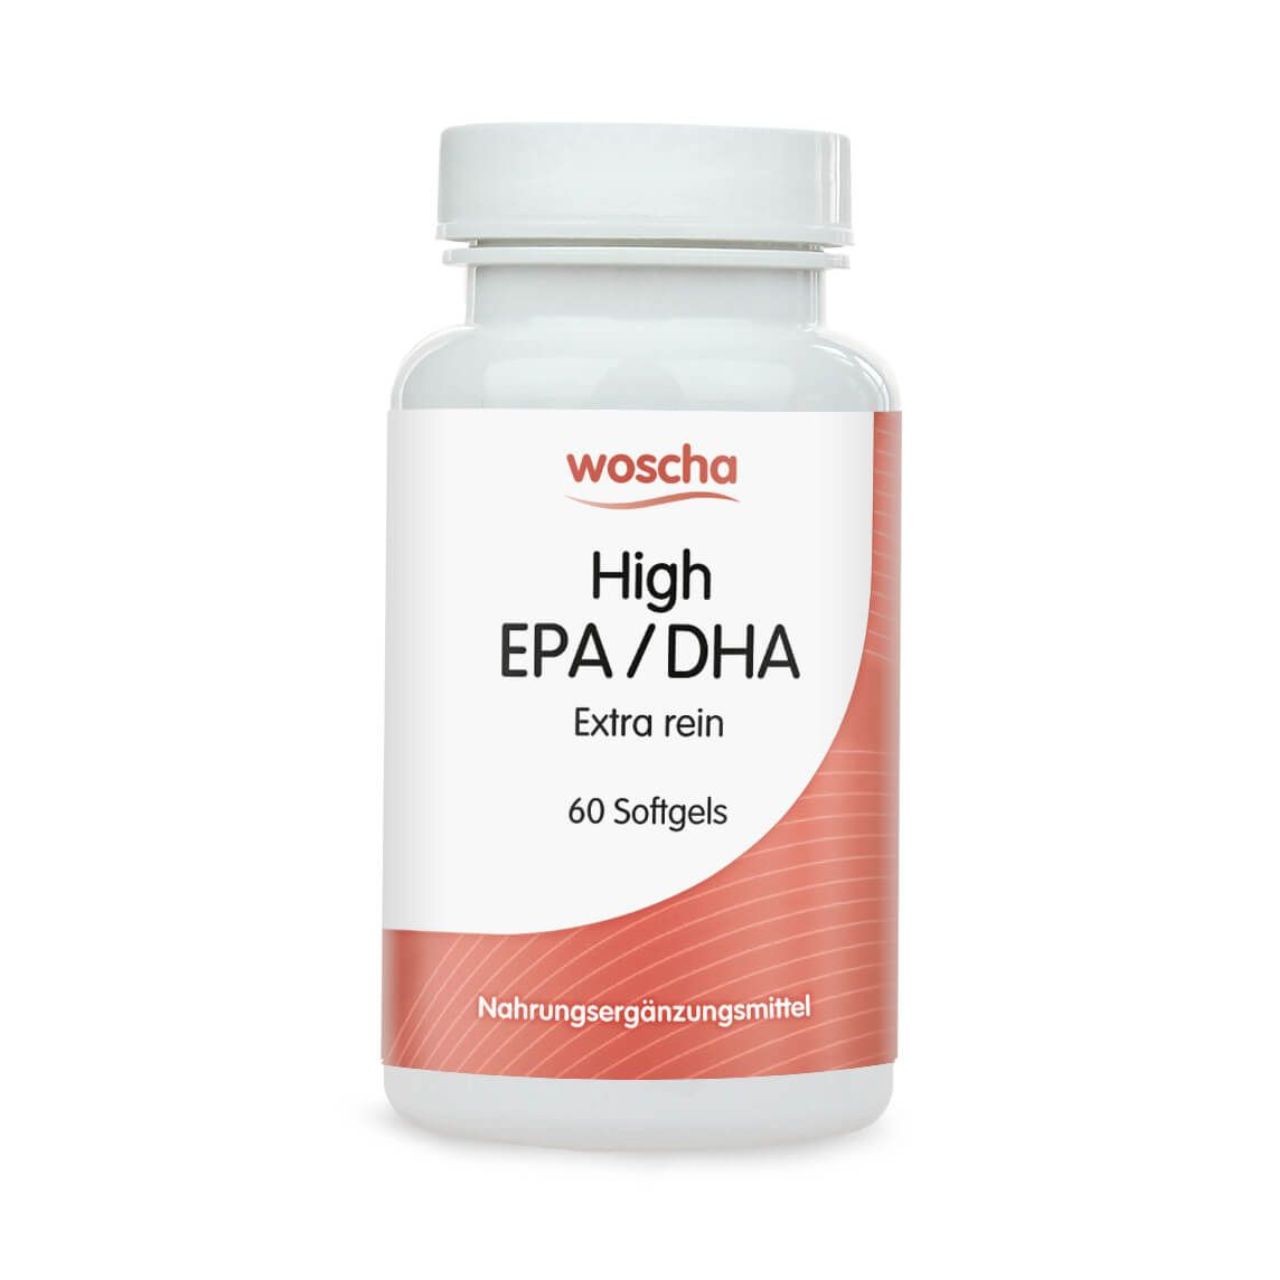 Woscha High EPA DHA von podo medi beinhaltet 60 Softgels